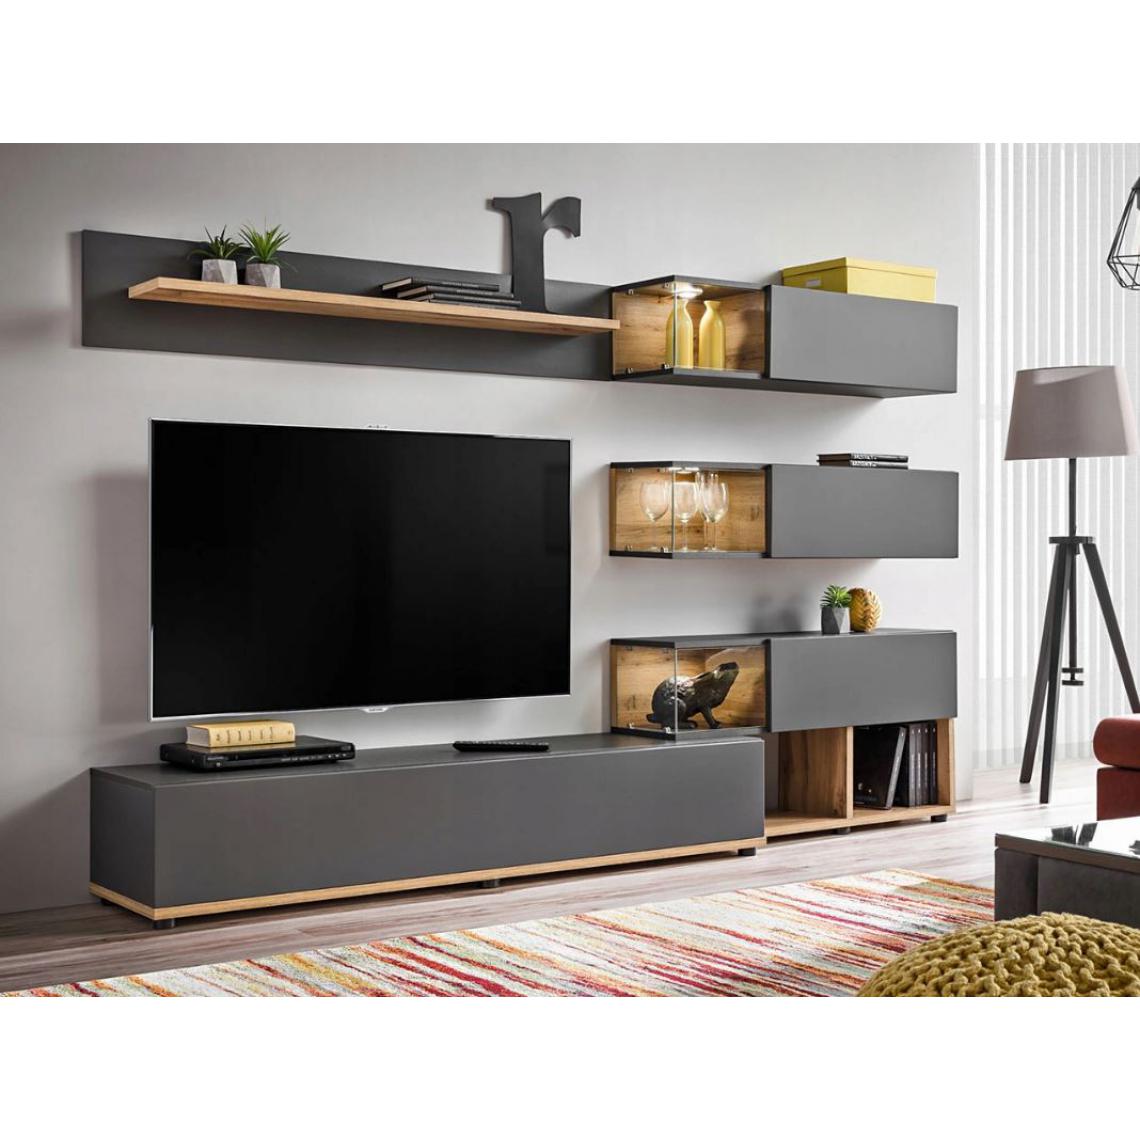 Dusine - Composition meubles TV FOX GRIS mat et bois avec LED 240 cm - Meubles TV, Hi-Fi